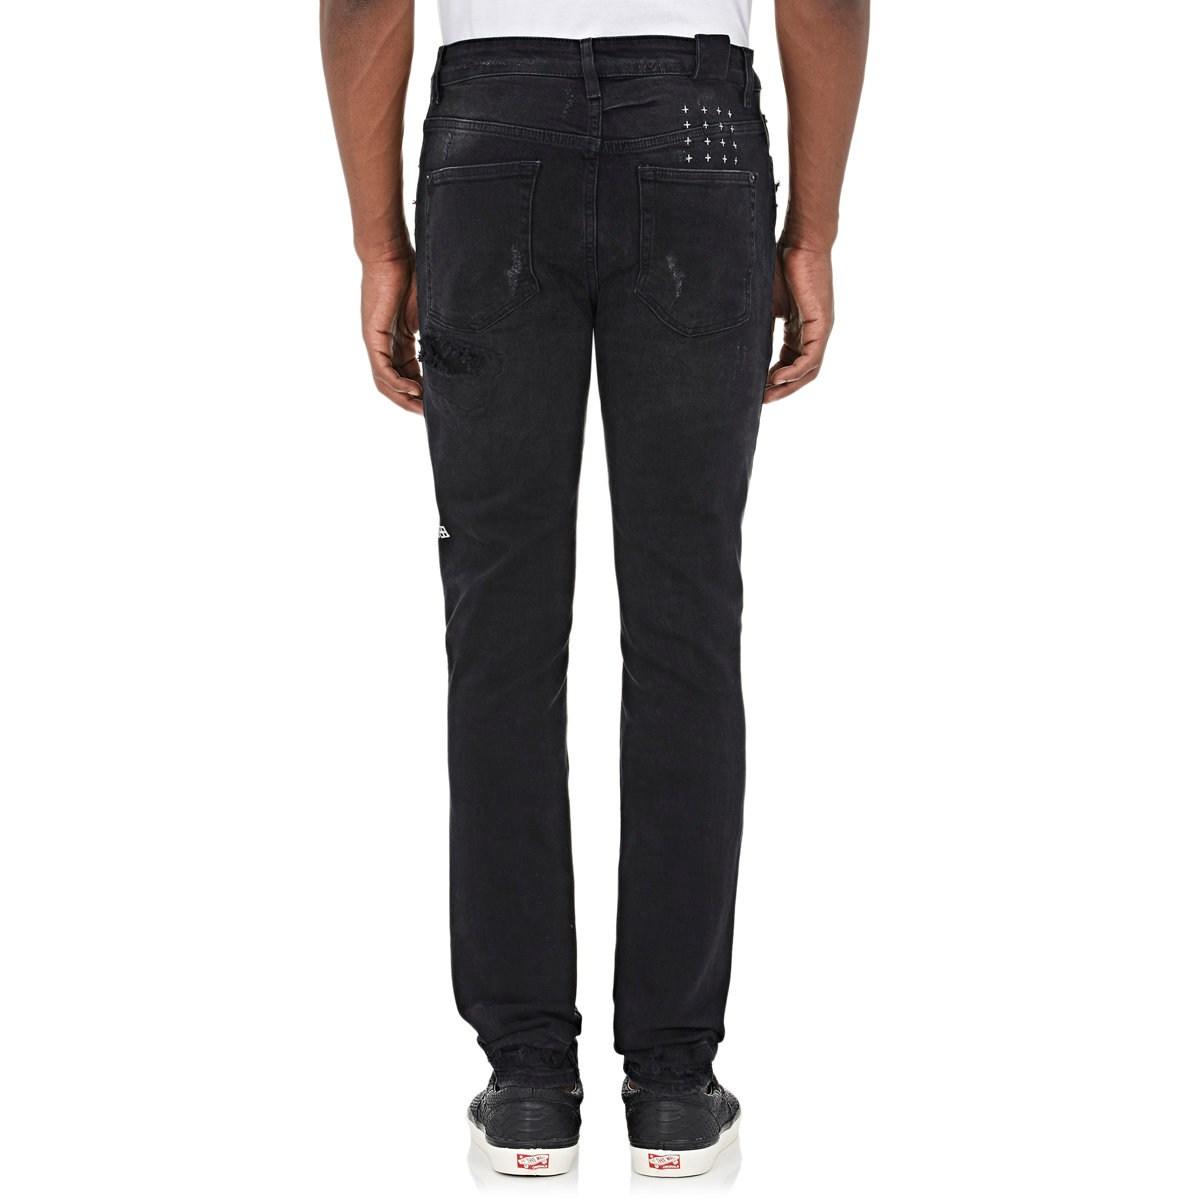 Ksubi Denim Chitch Slim Jeans in Black for Men - Lyst